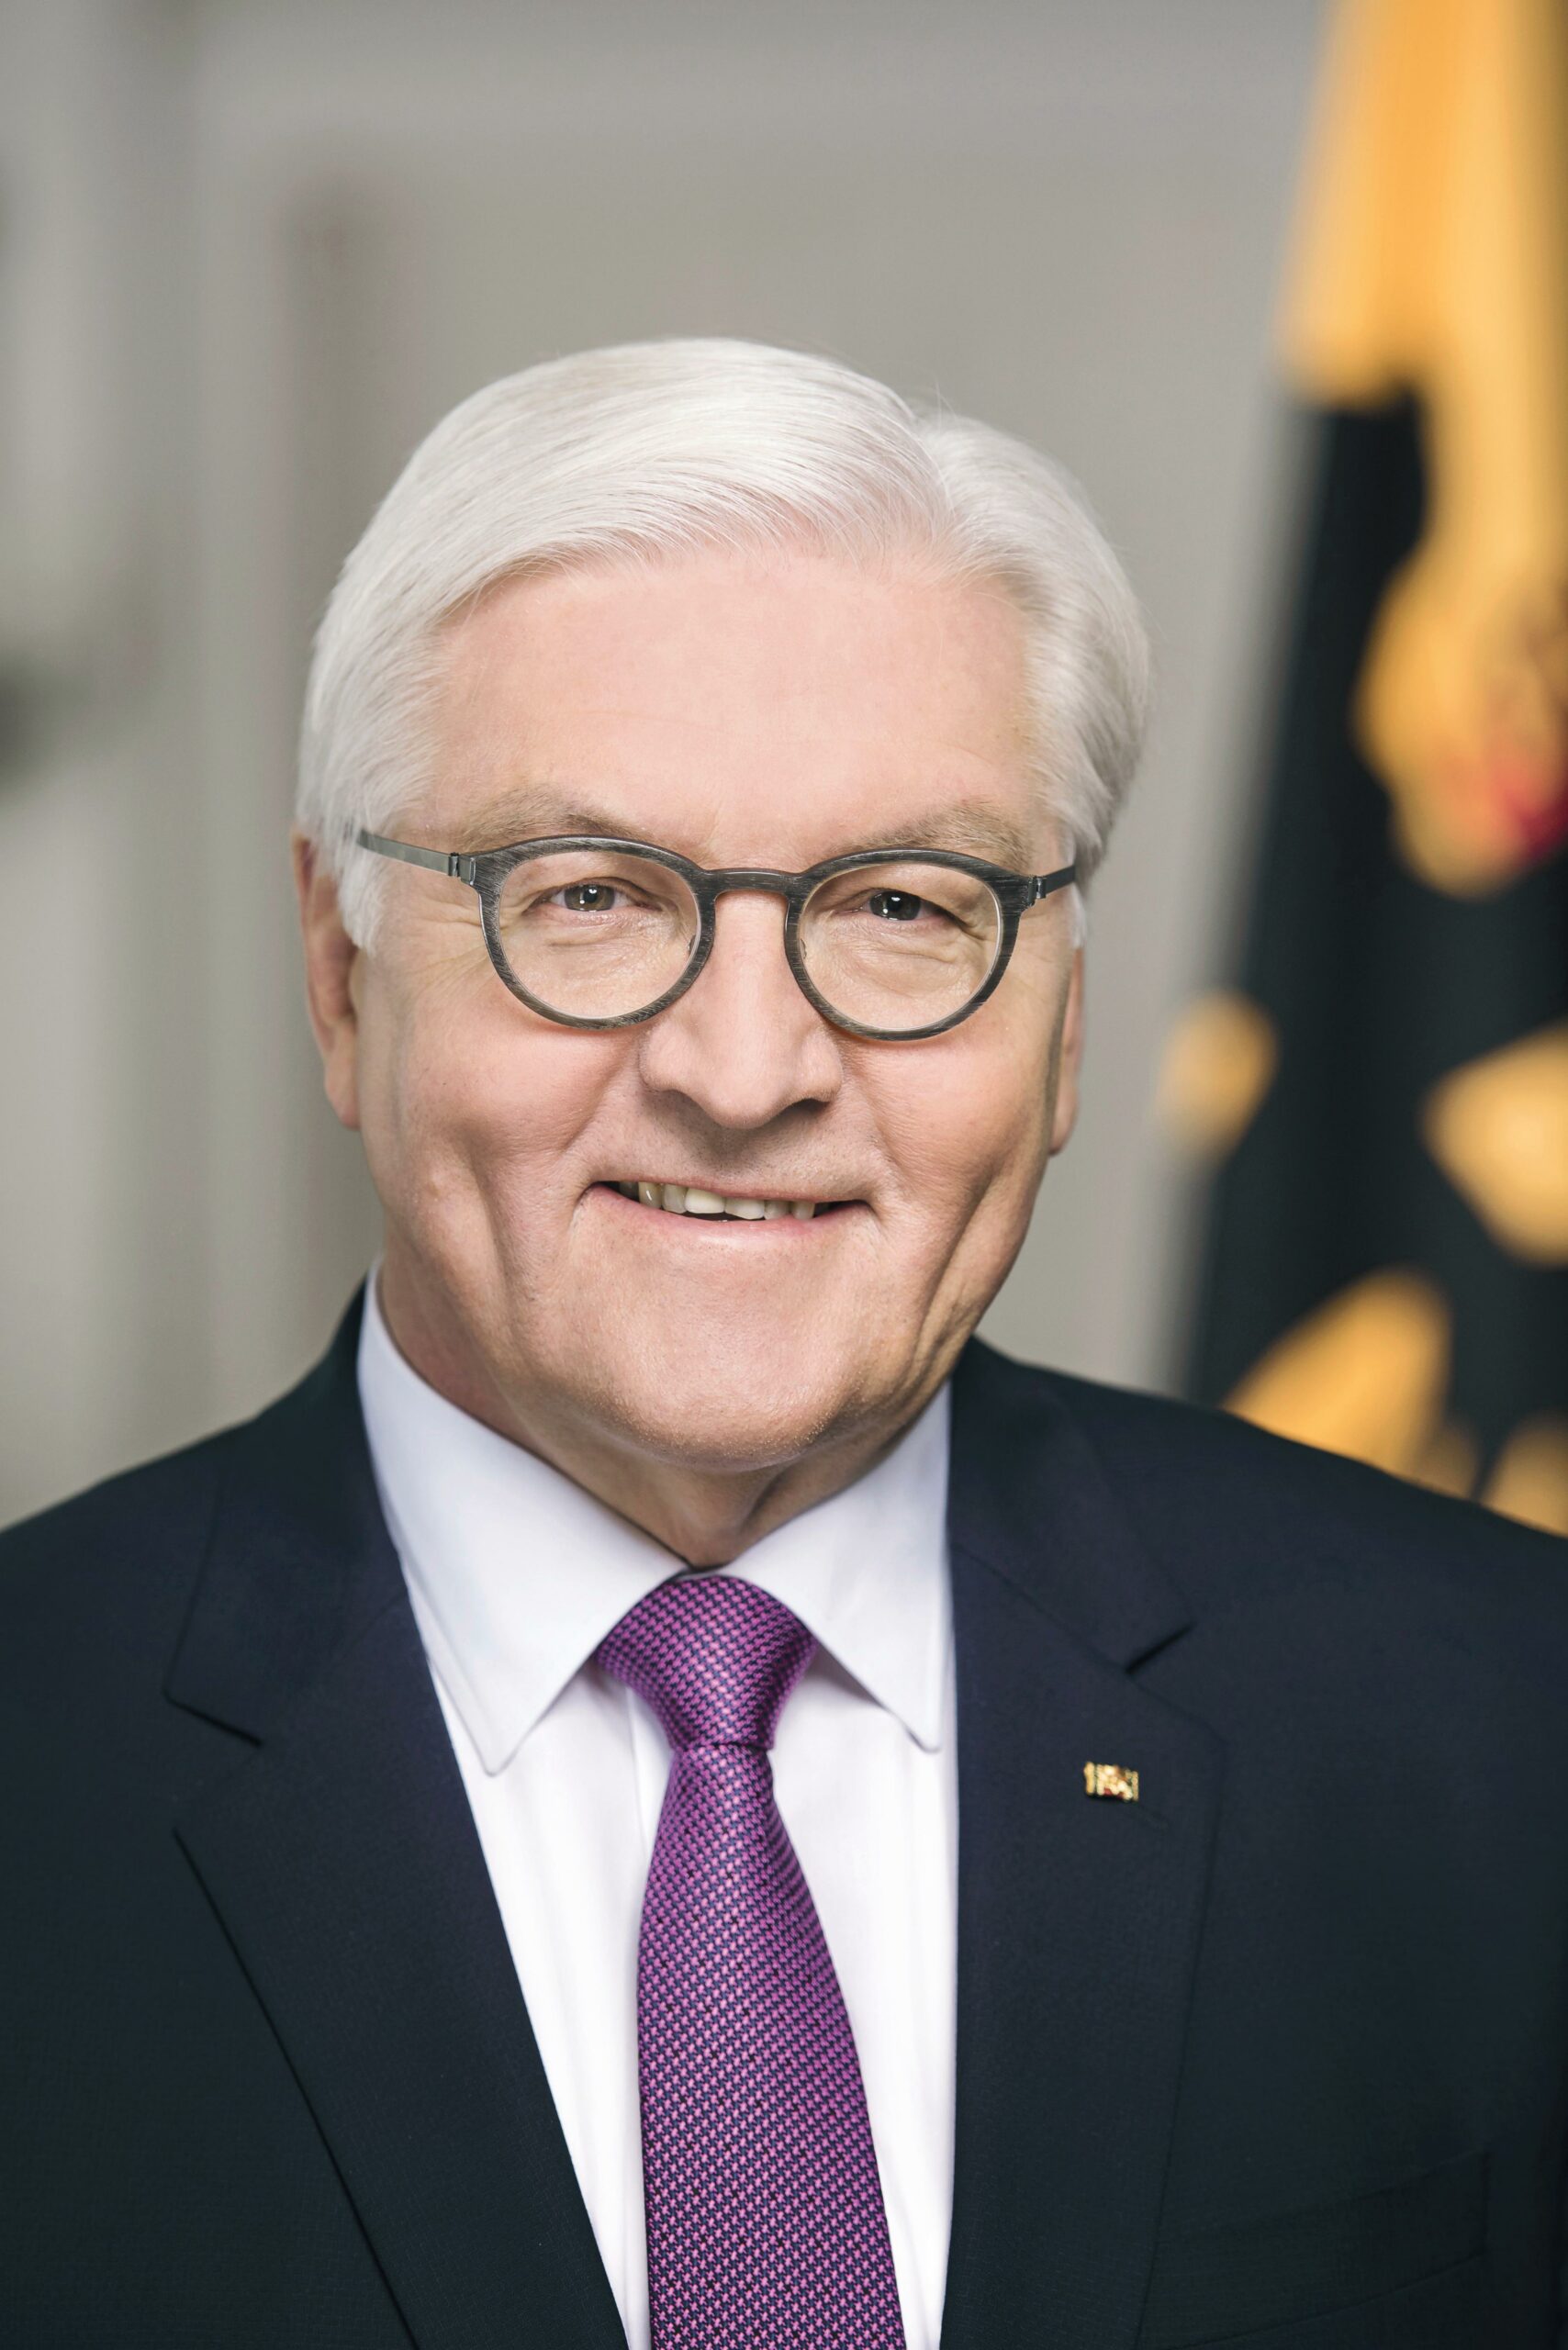 Frank-Walter Steinmeier bleibt Bundespräsident